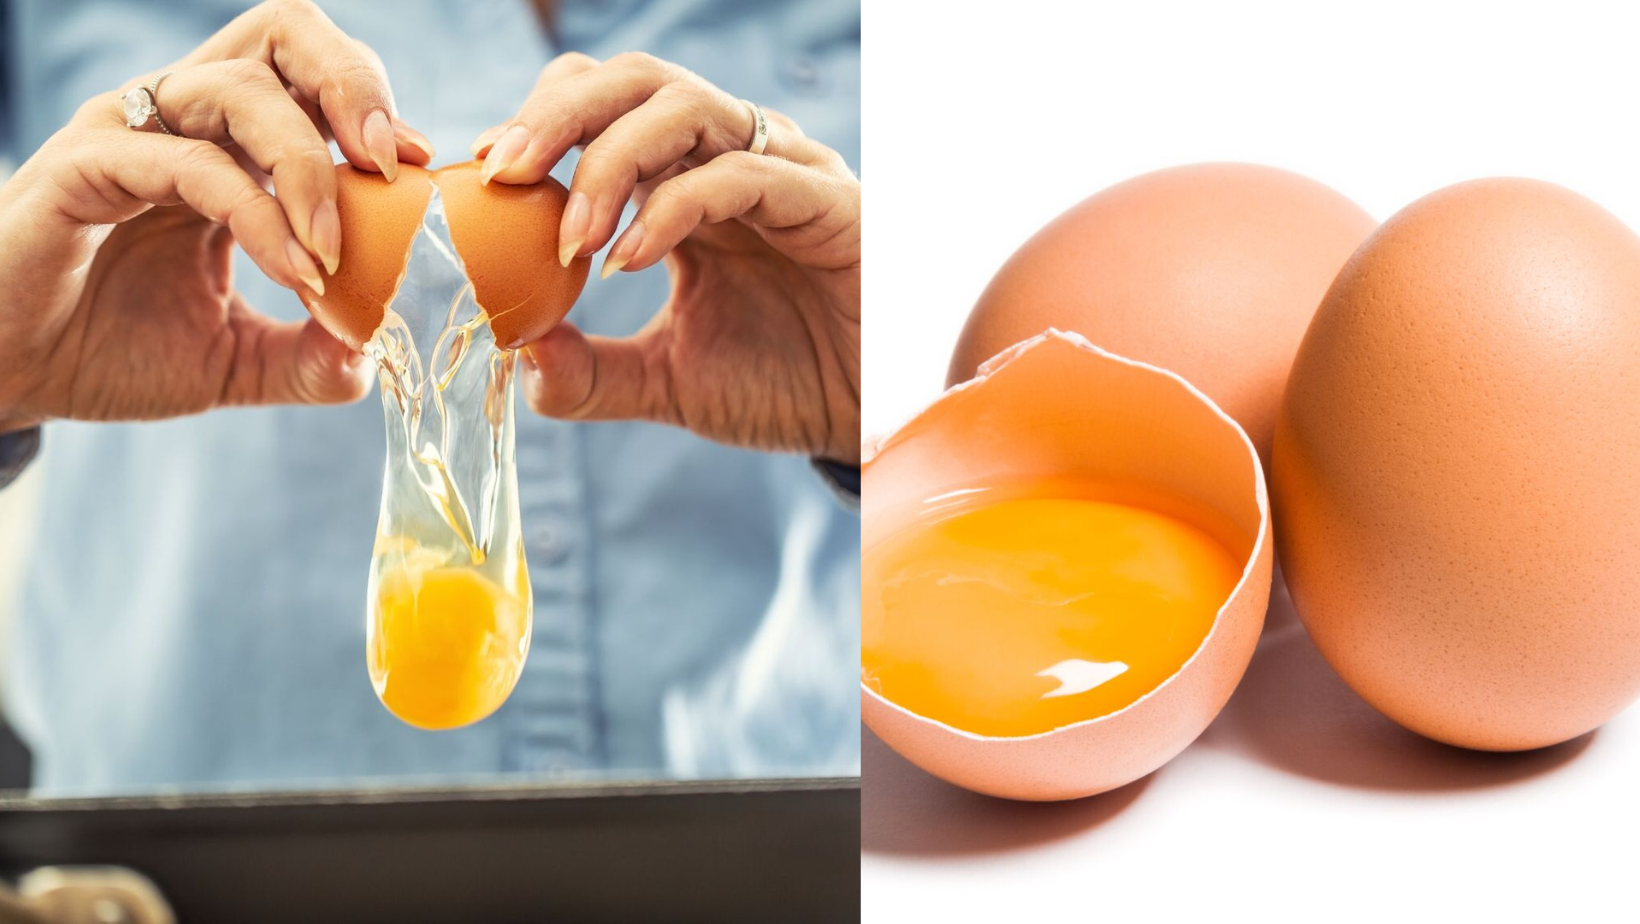 Péremption des œufs : Comment savoir s'ils sont encore bons à consommer ?